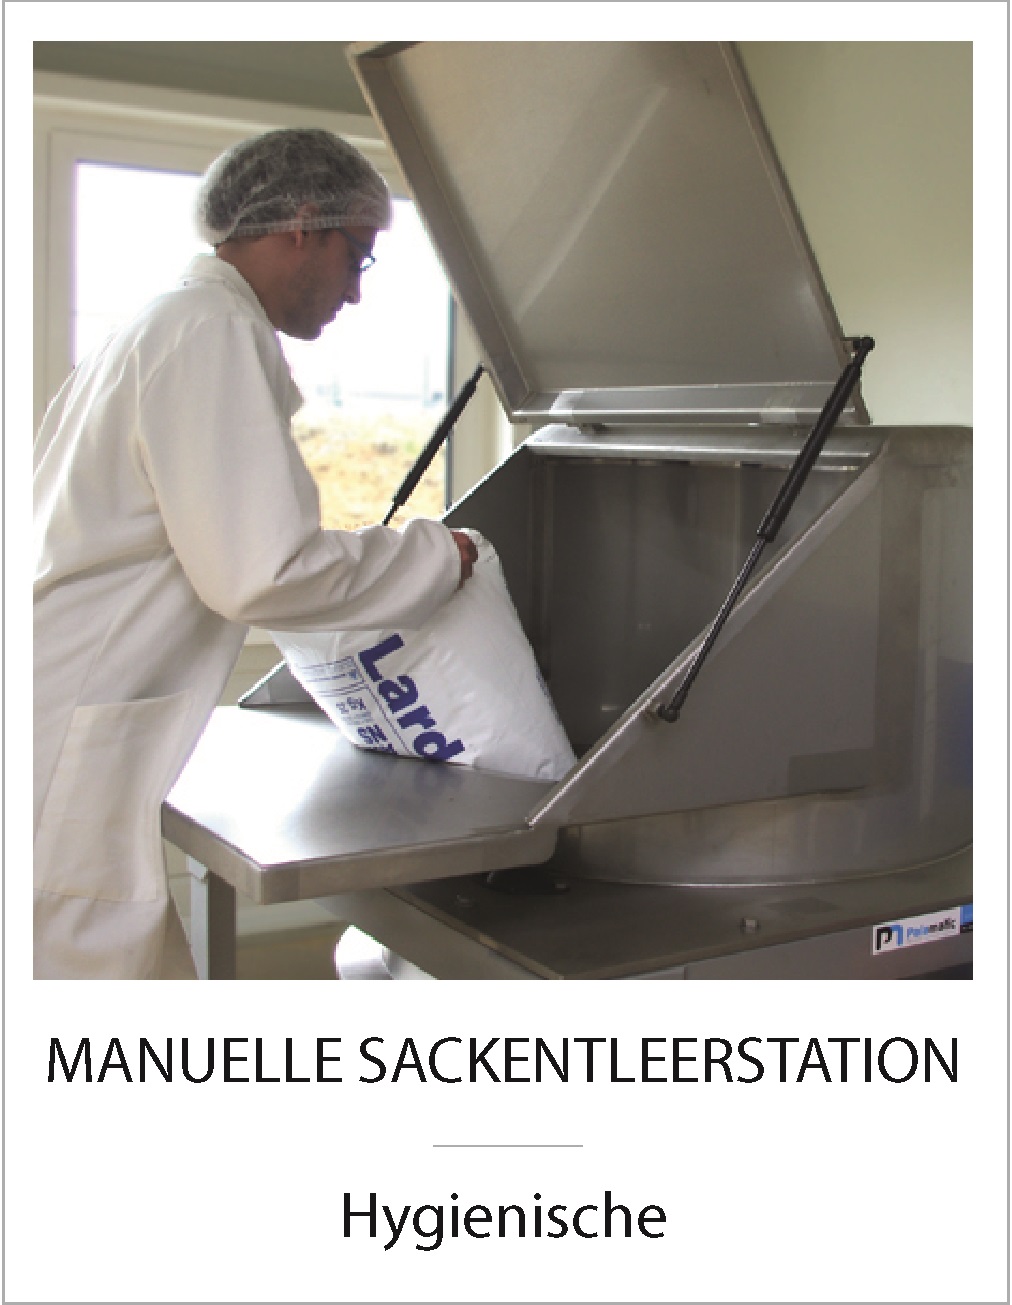 MANUELLE_SACKENTLEERSTATION_Hygienische.jpg